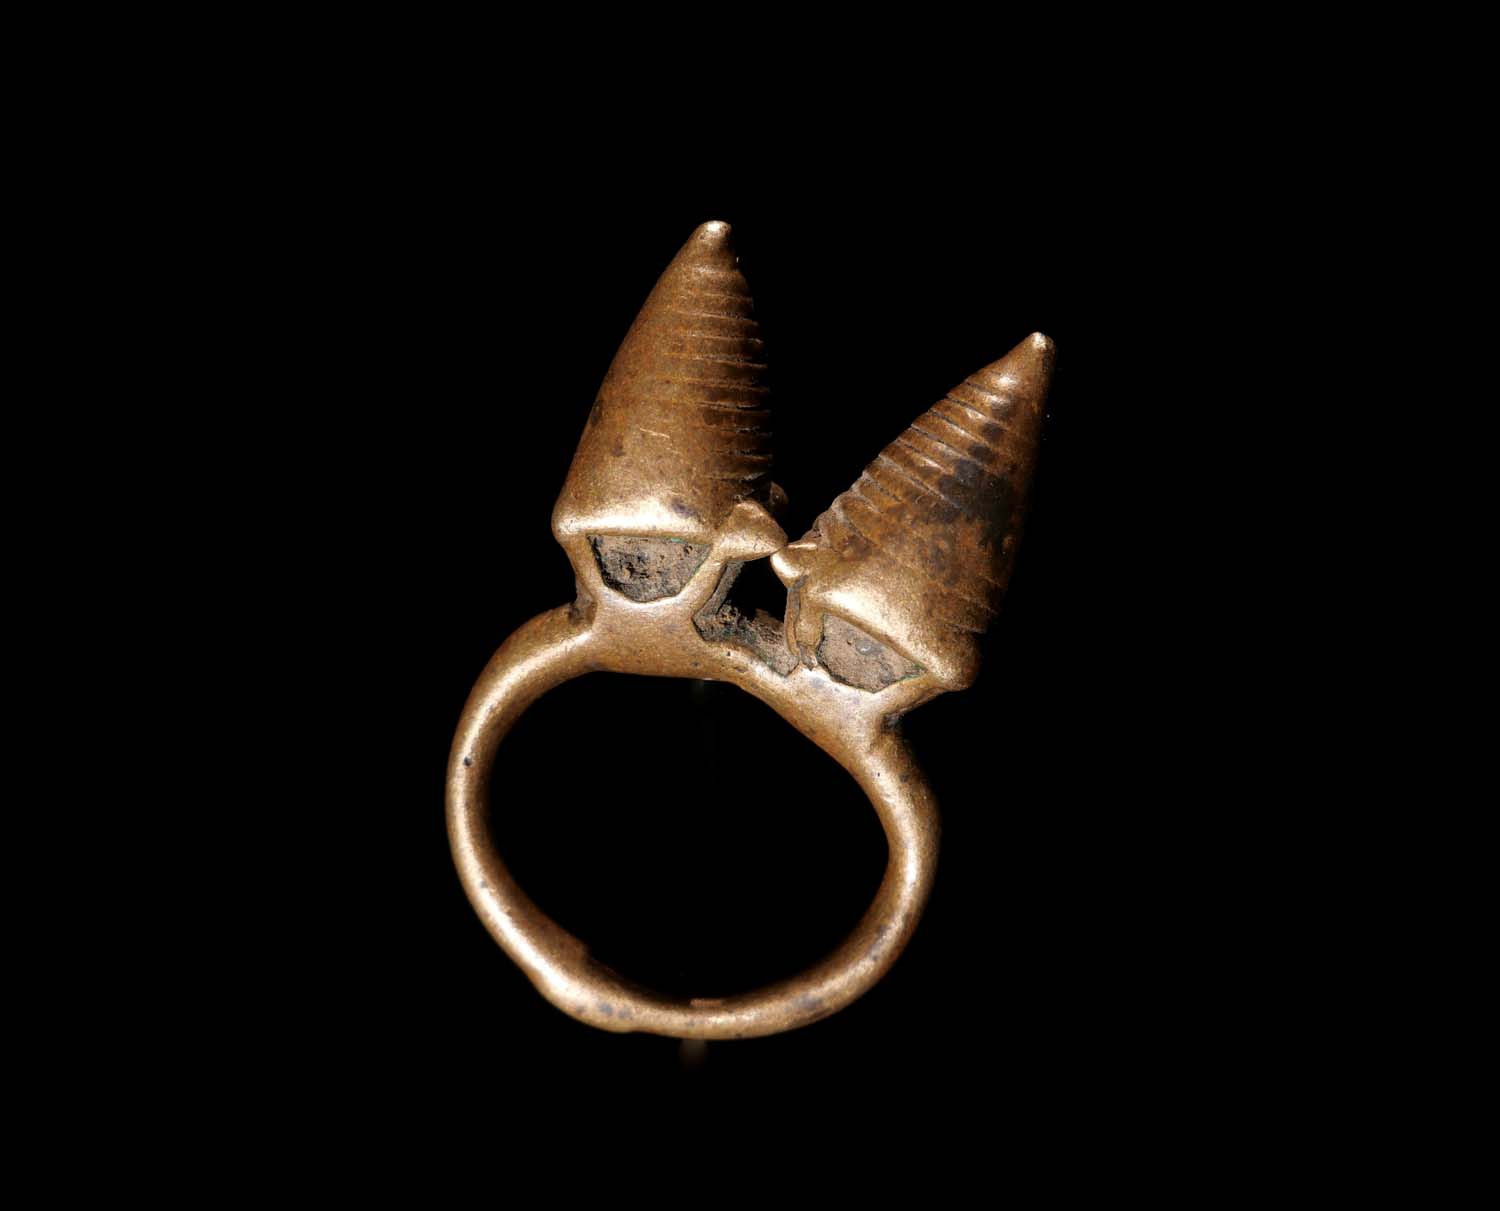 Fingerring für Männer. Bronze, gegossen in der verlorenen Form. Dogon / Mali. Anfang 20.Jhdt. H 4,5 cm, 120.- €